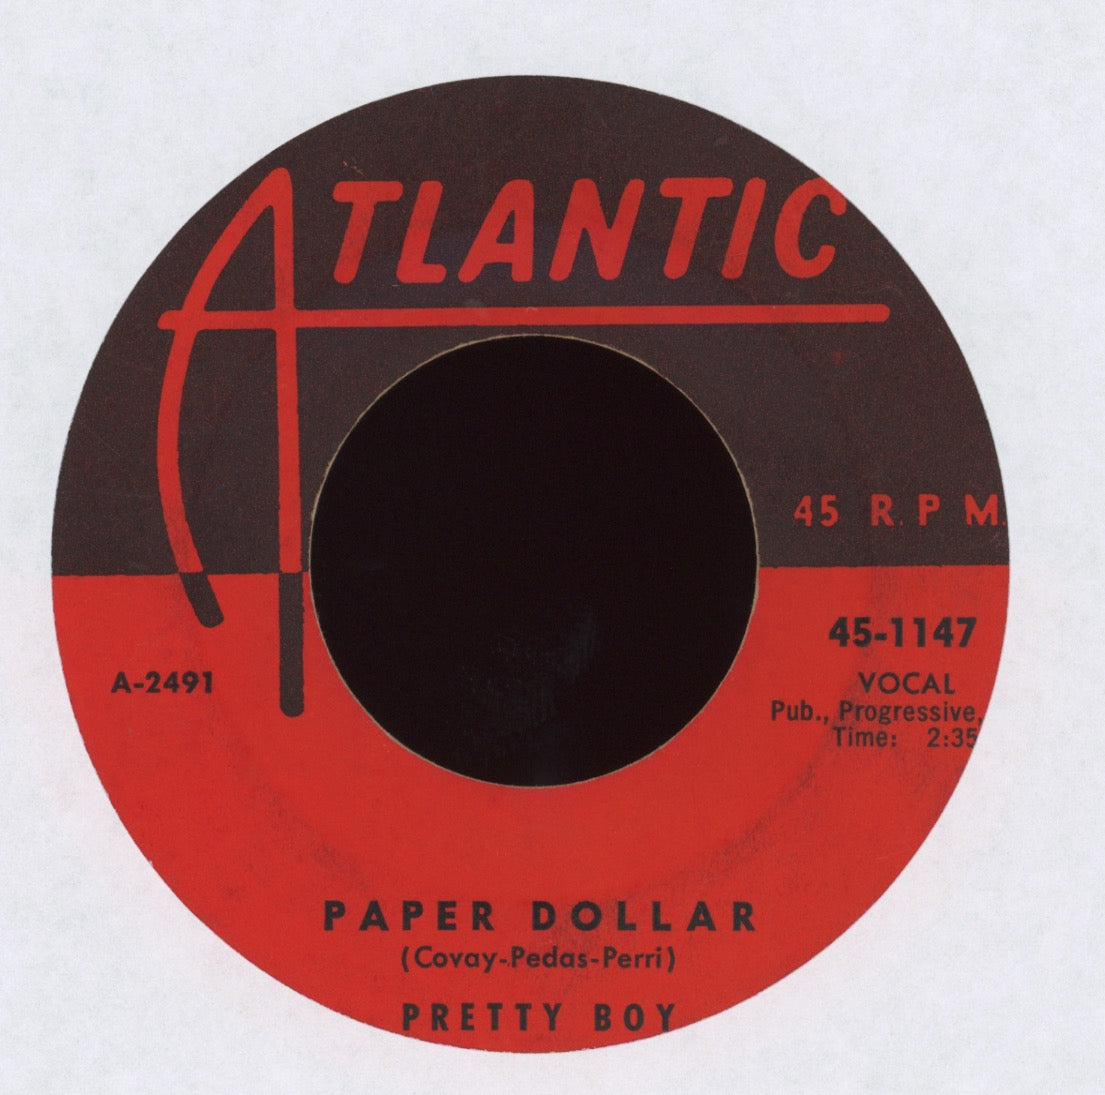 Pretty Boy (Don Covay) - Bip Bop Bip on Atlantic